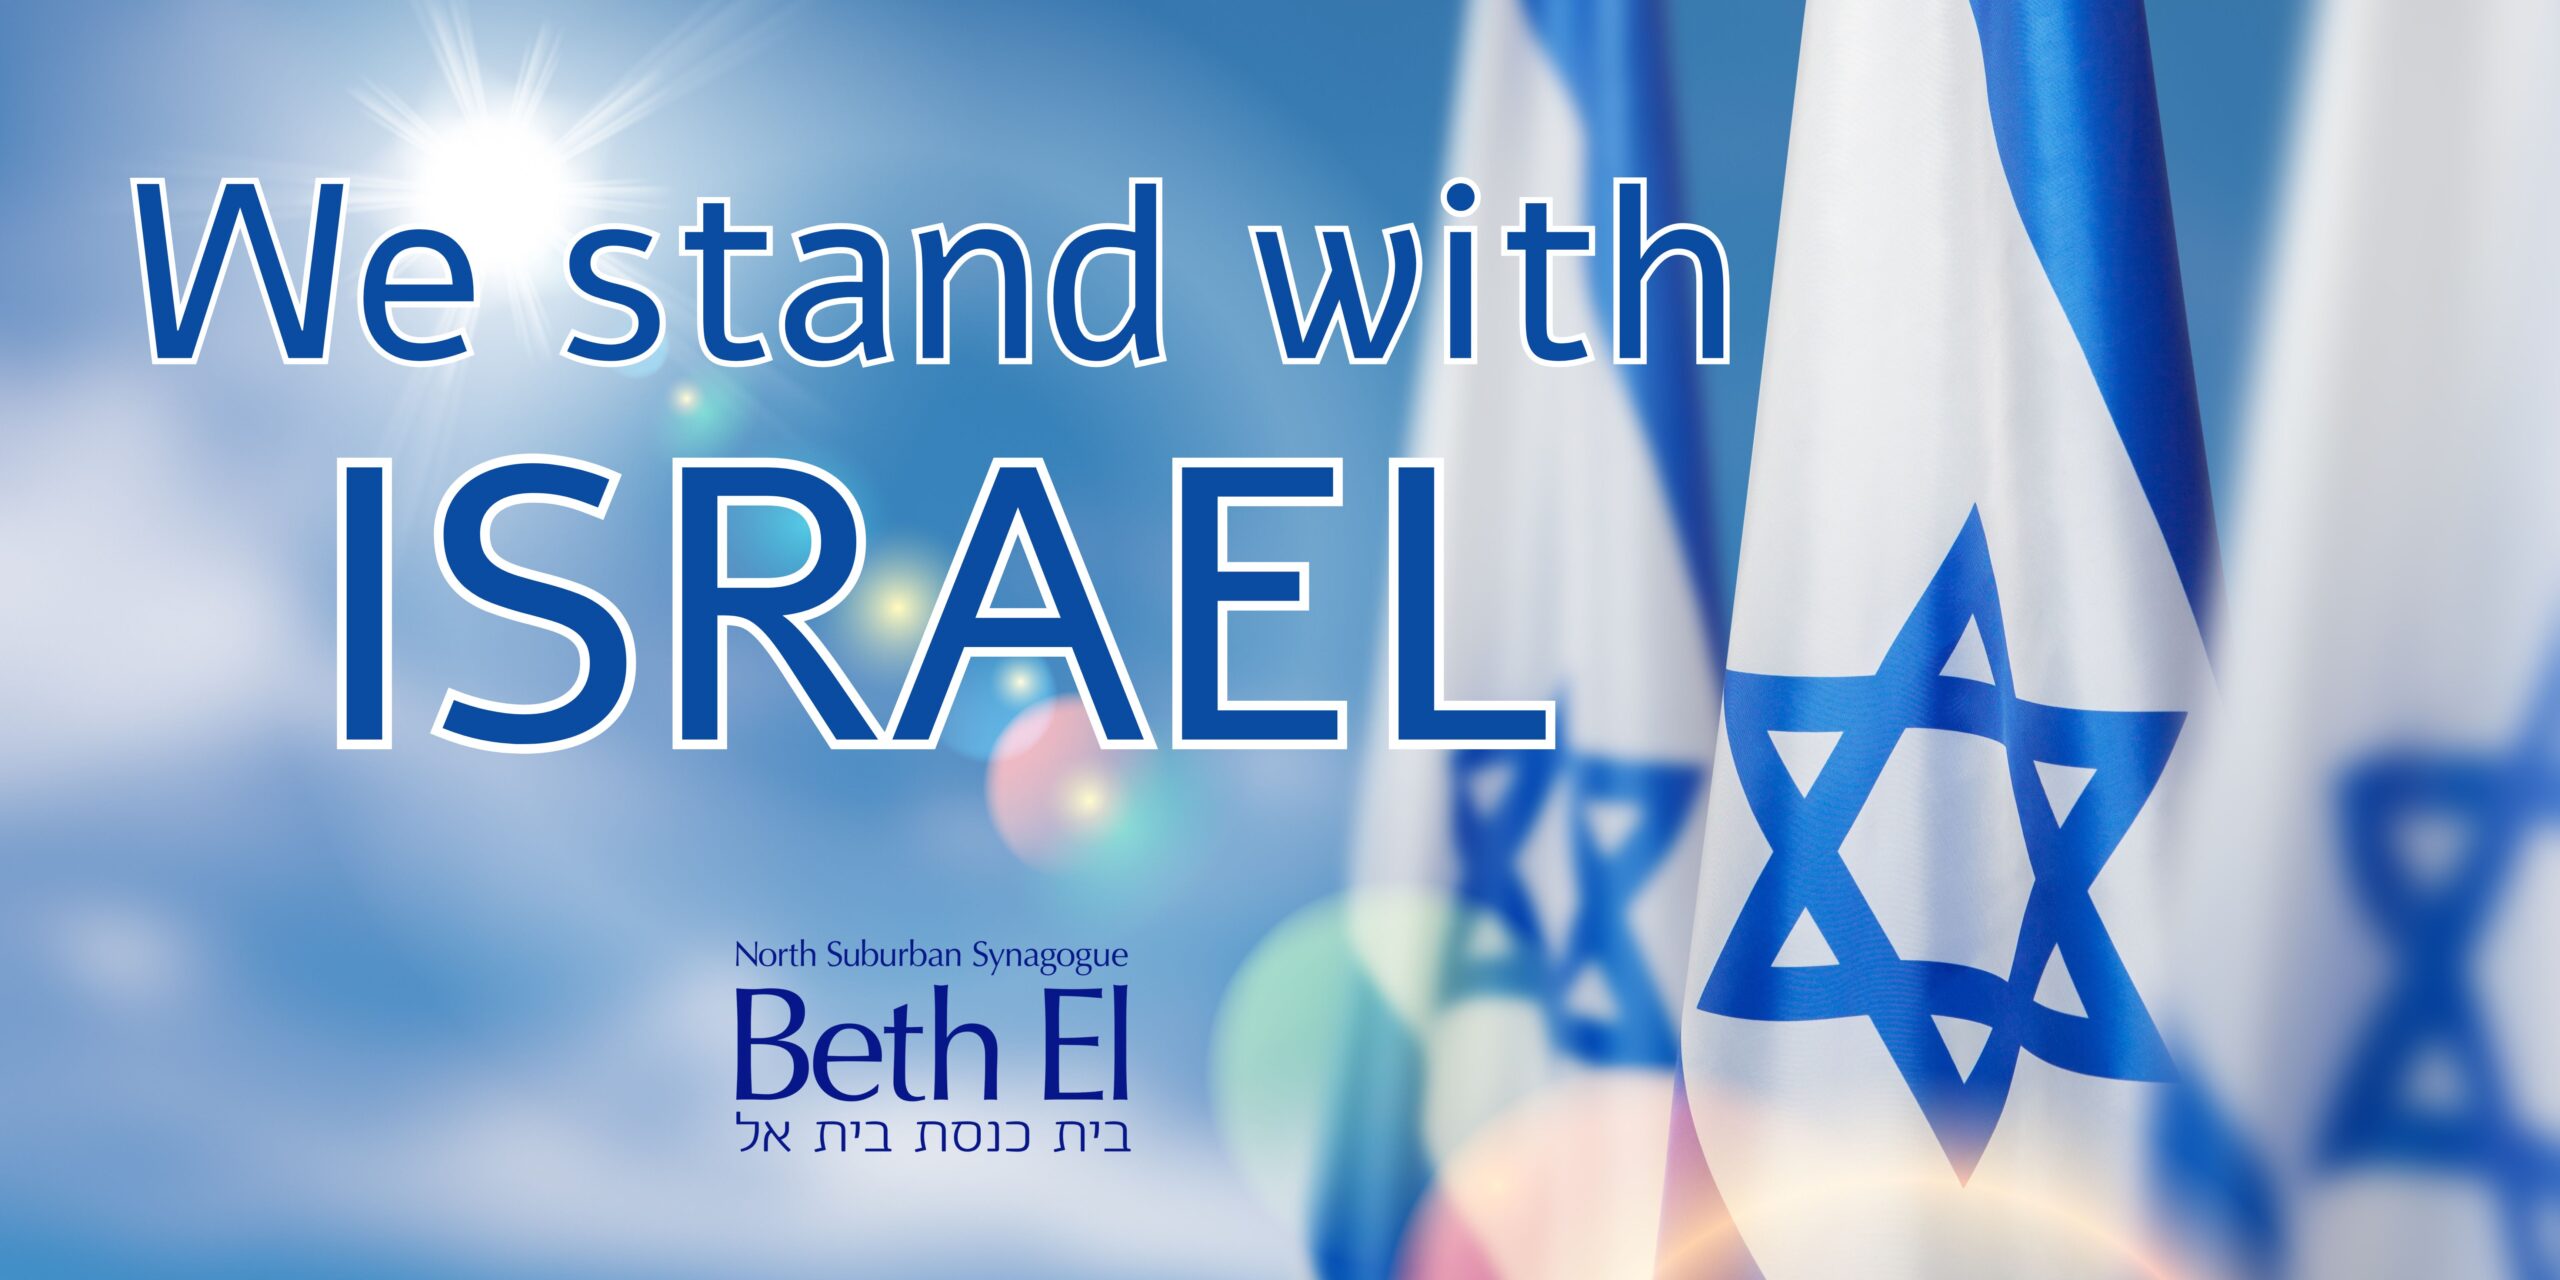 Beth El Stands with Israel  North Suburban Synagogue Beth El